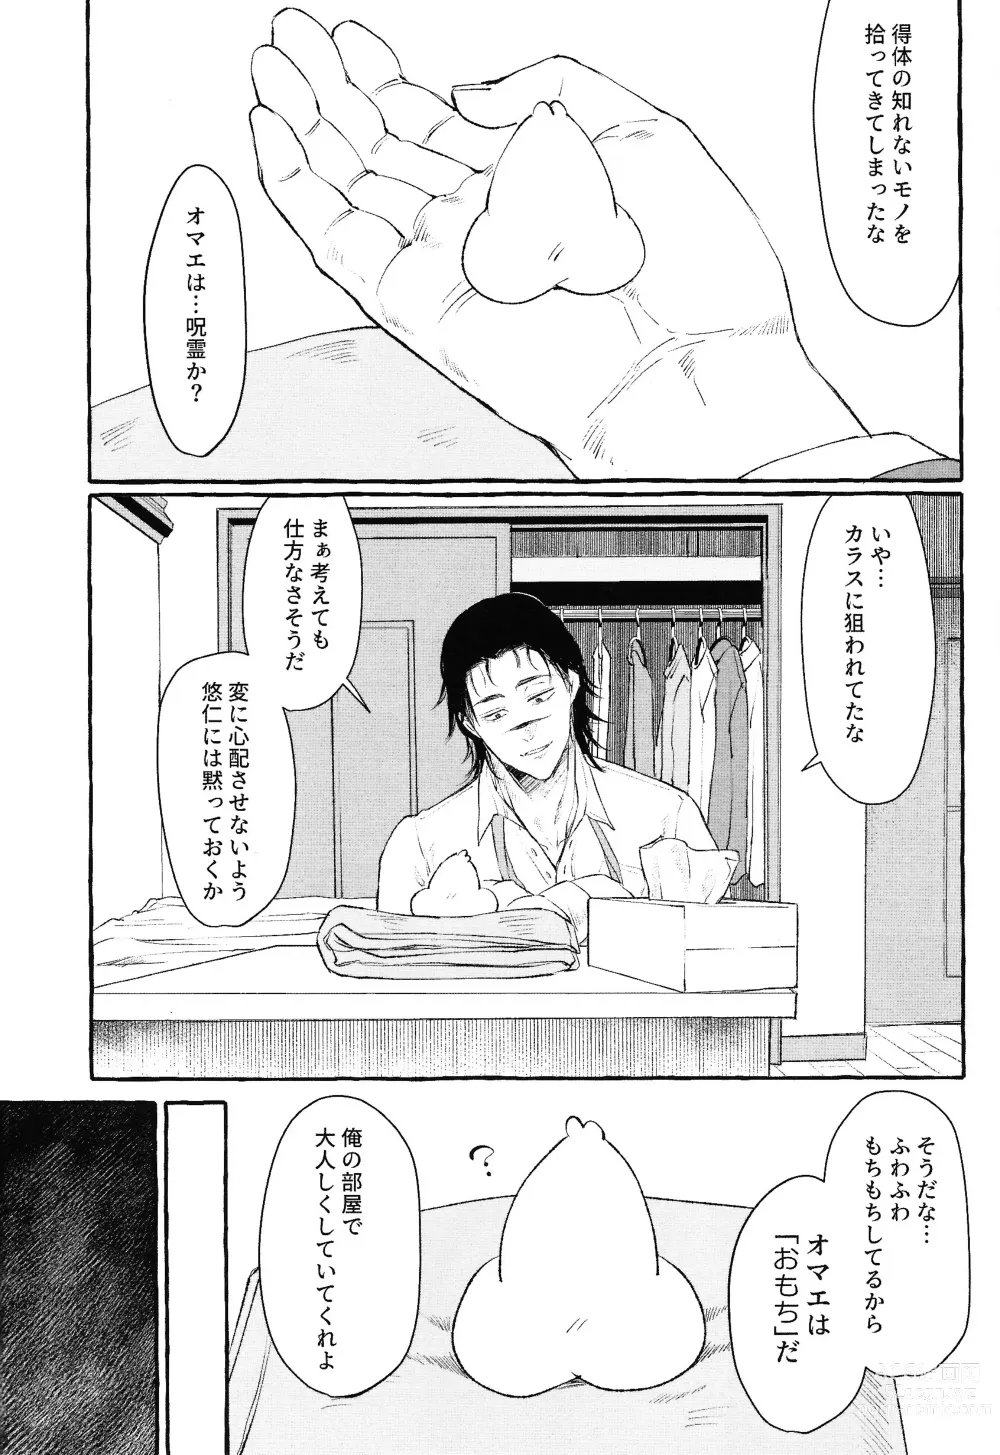 Page 7 of doujinshi Otouto no Kimochi